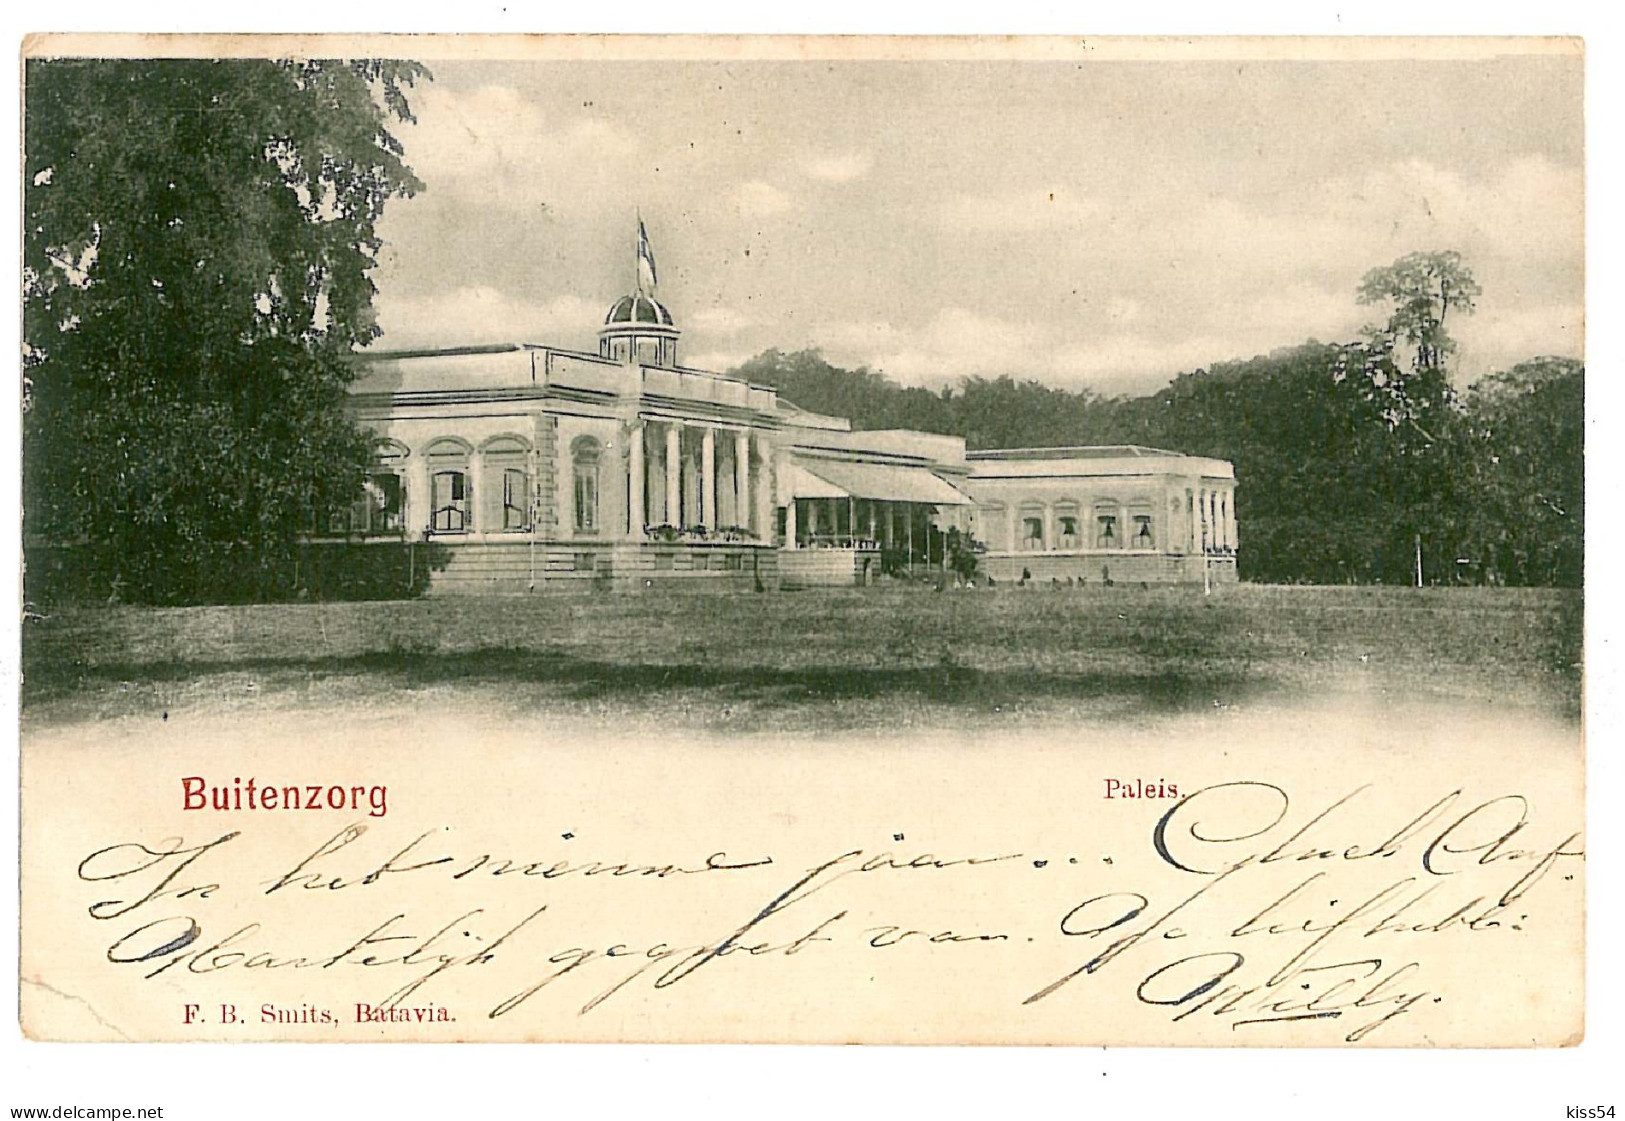 INDO 21 - 9297 BUITENZORG, Indonesia, Litho, Palace - Old Postcard - Used - 1900 - Indonesië